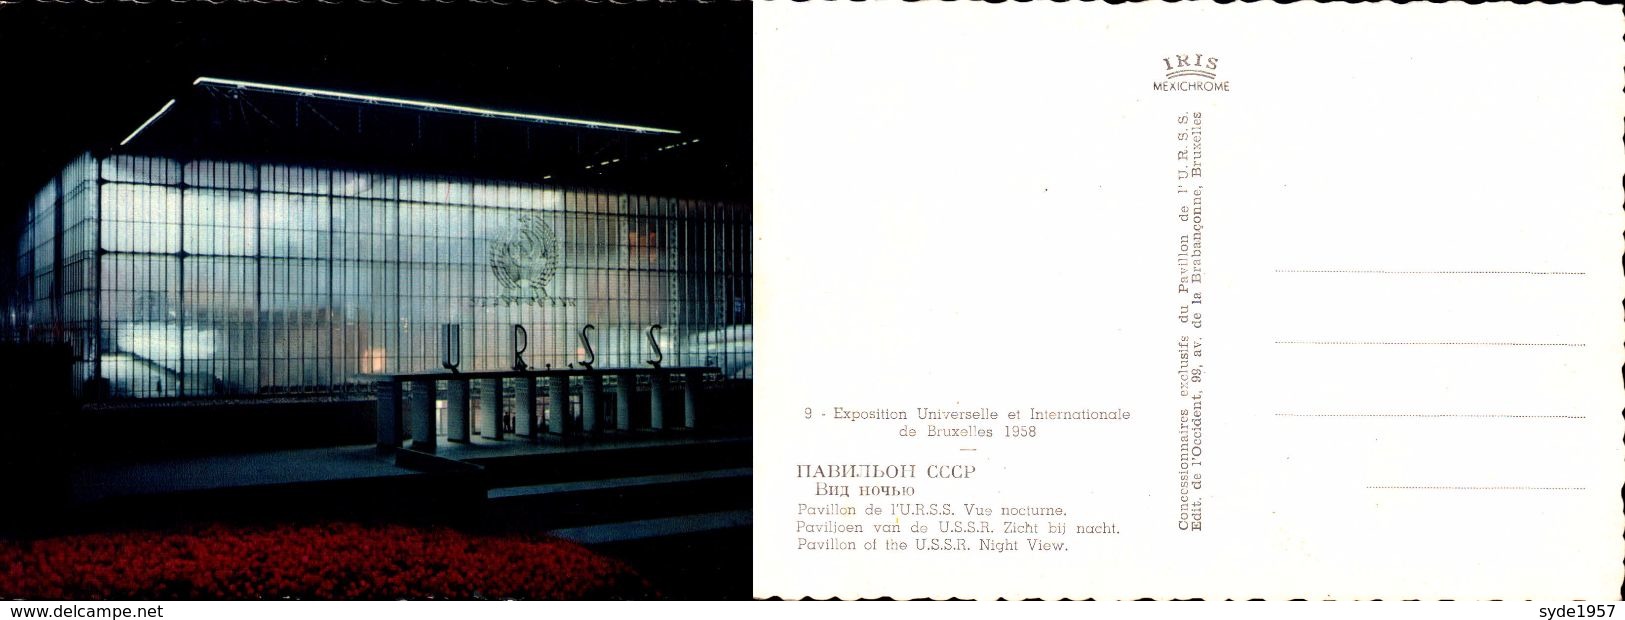 EXPO Universelle 1958 - Pavillon URSS Vue Nocturne - Institutions Européennes